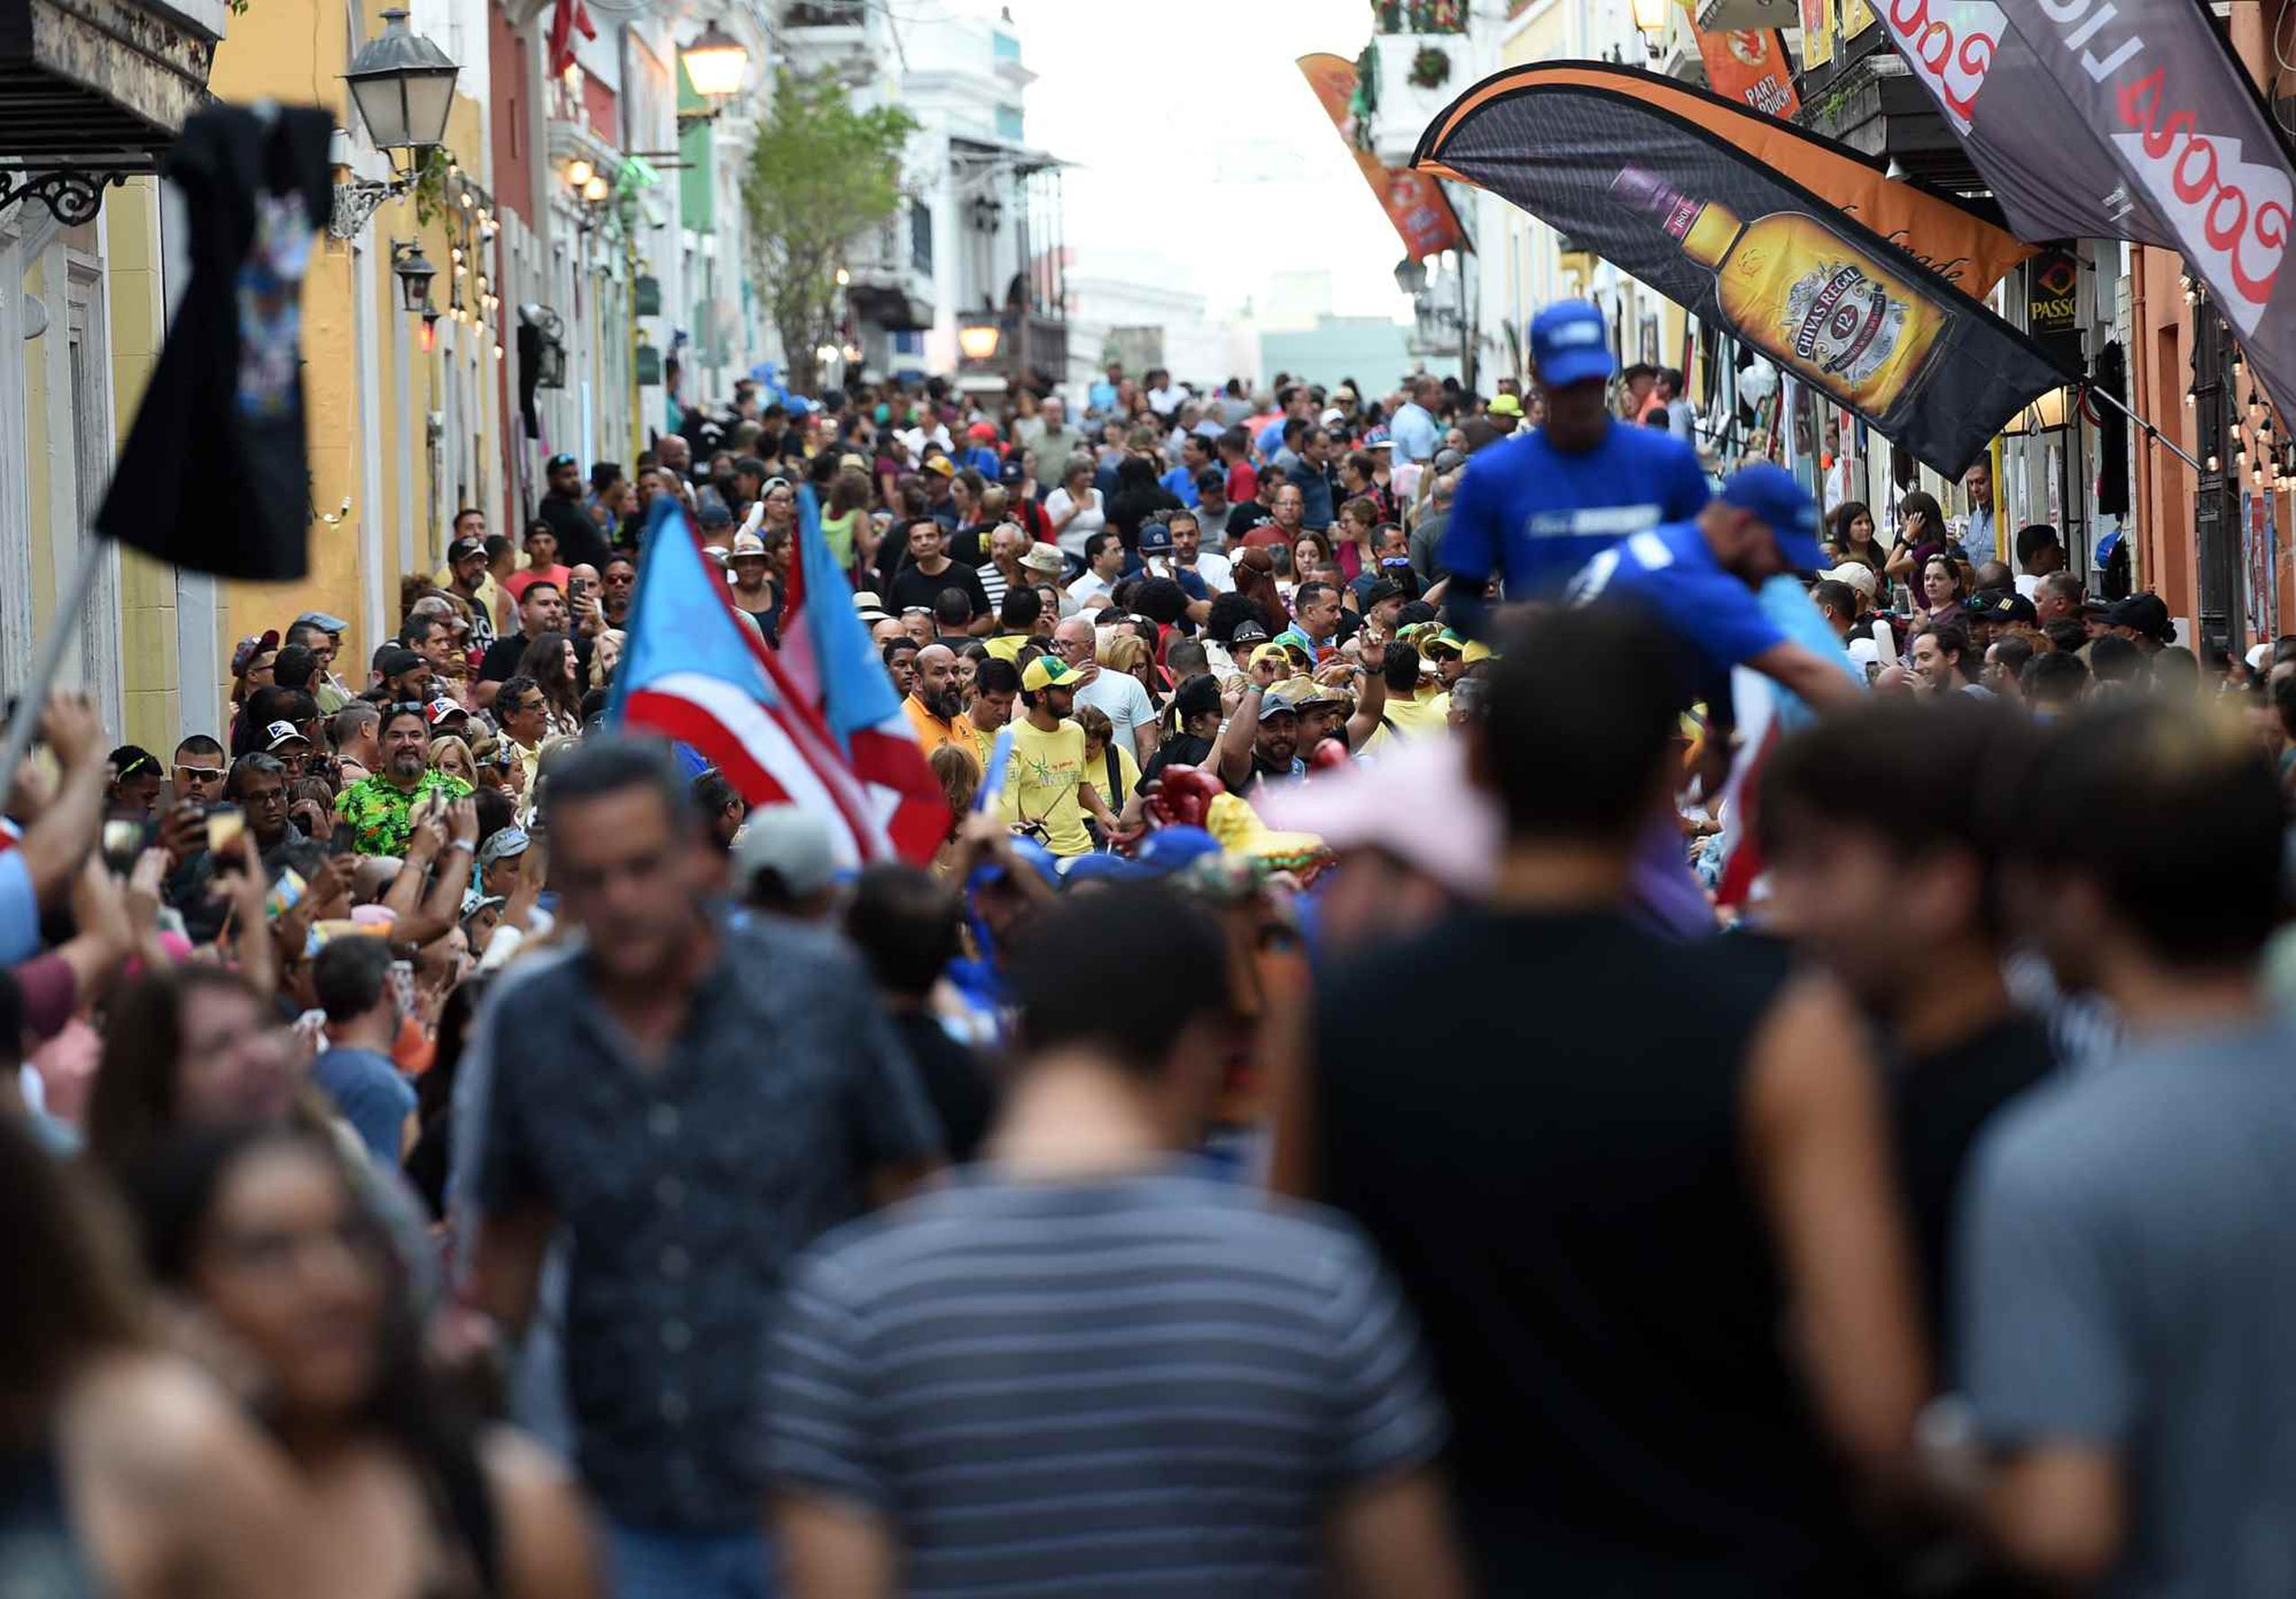 Este año las Fiestas de la Calle San Sebastián comenzaron un día antes, el pasado miércoles 17 enero. (GFR Media)